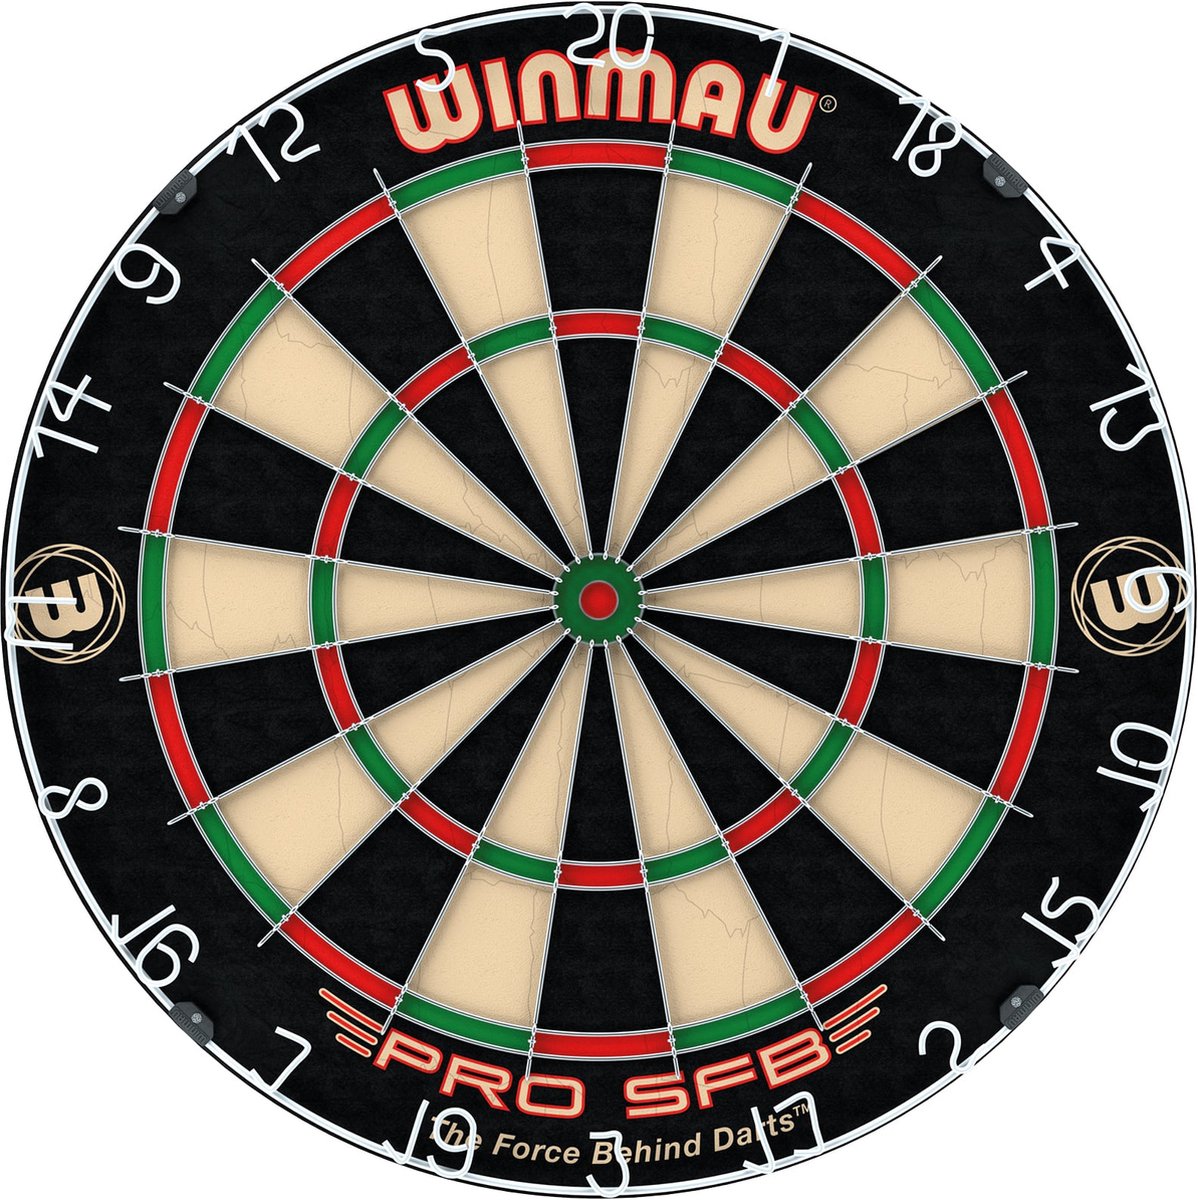 WINMAU - Pro-SFB Dartbord - Winmau